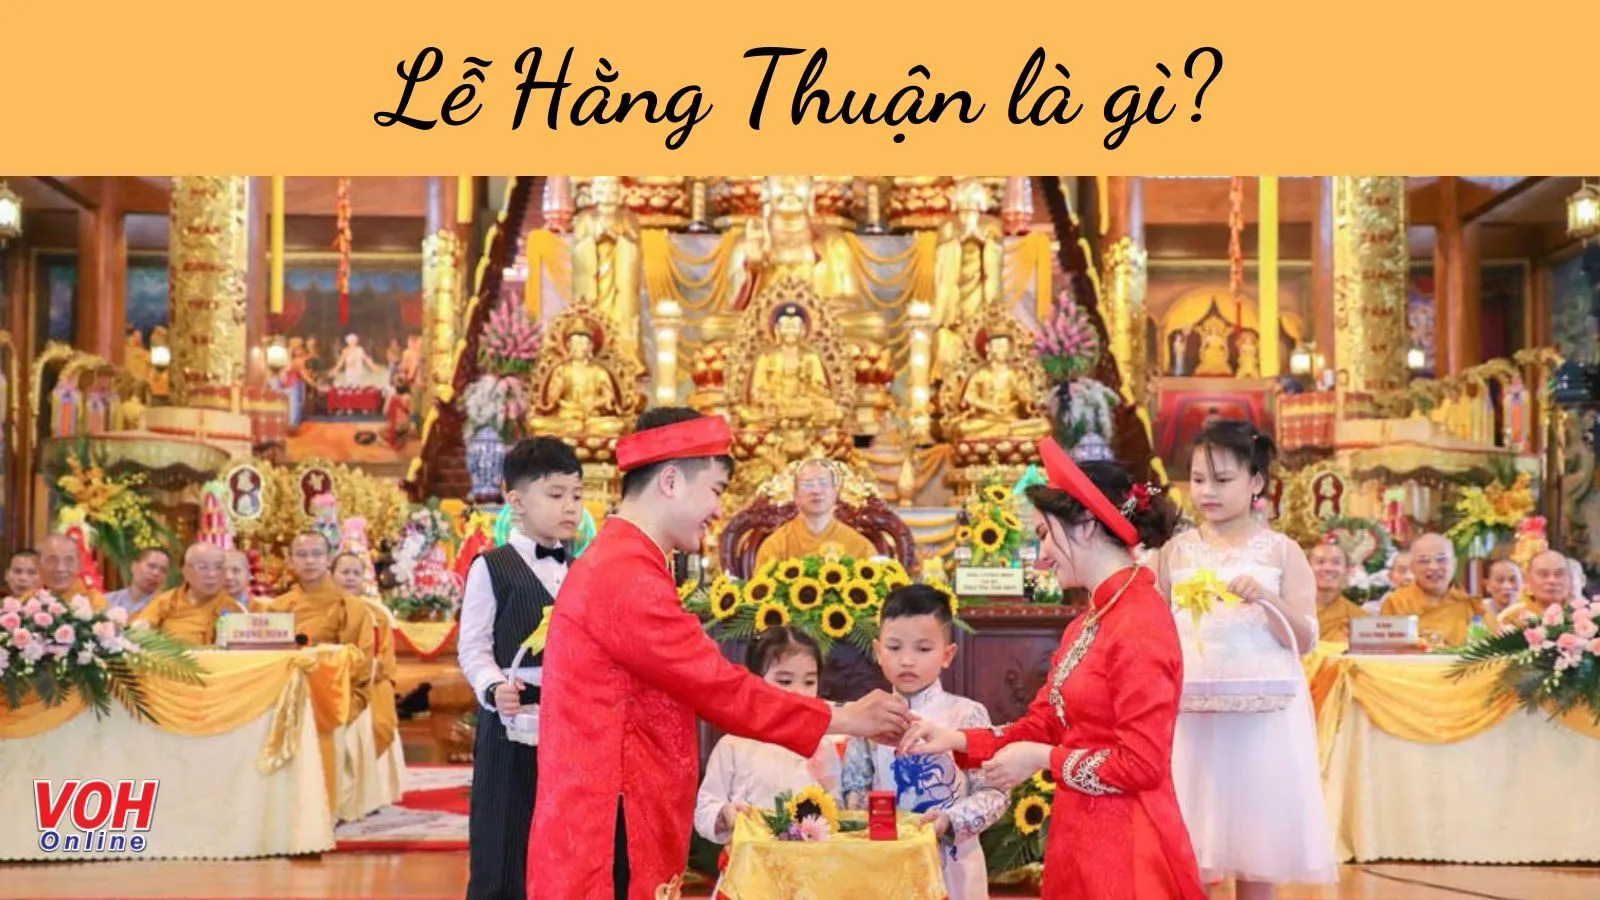 Lễ Hằng Thuận là gì? Ý nghĩa lễ Hằng Thuận tại chùa